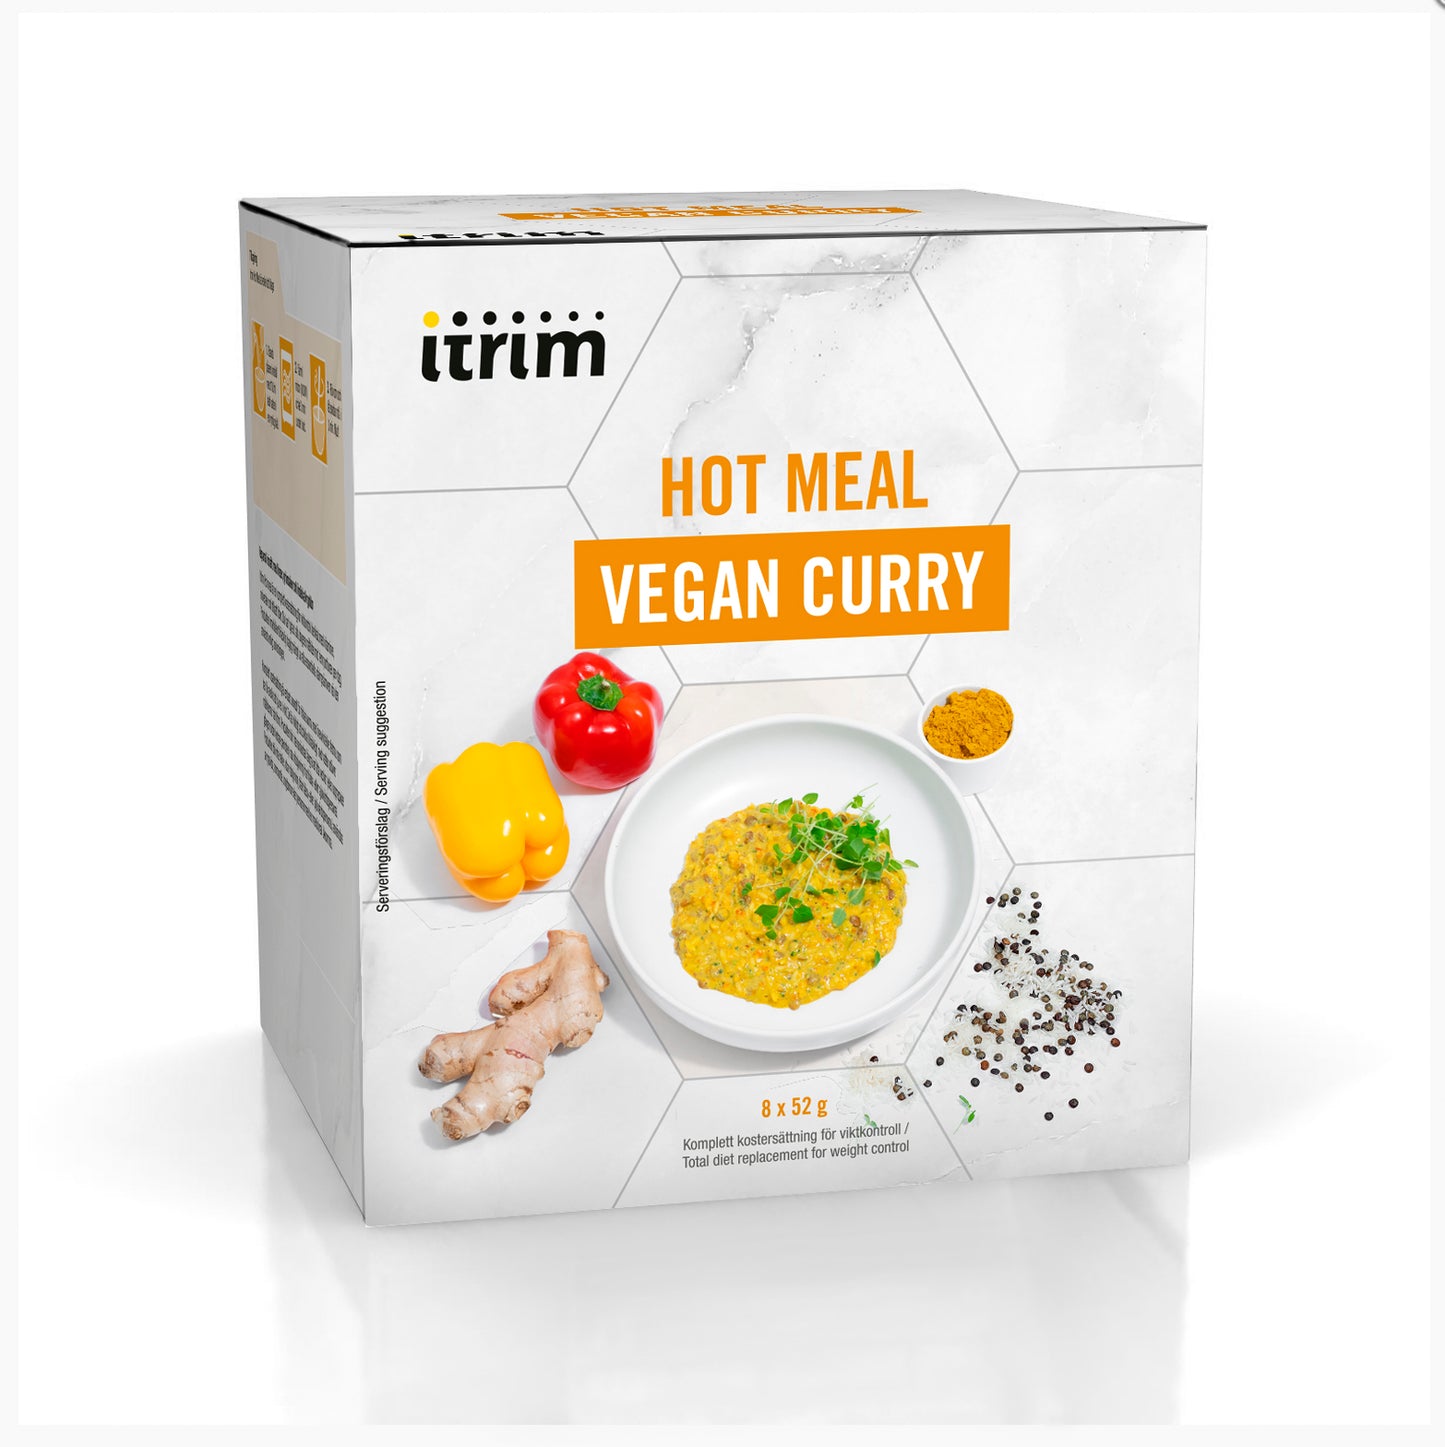 Hot meal Vegan Curry 52g x 8